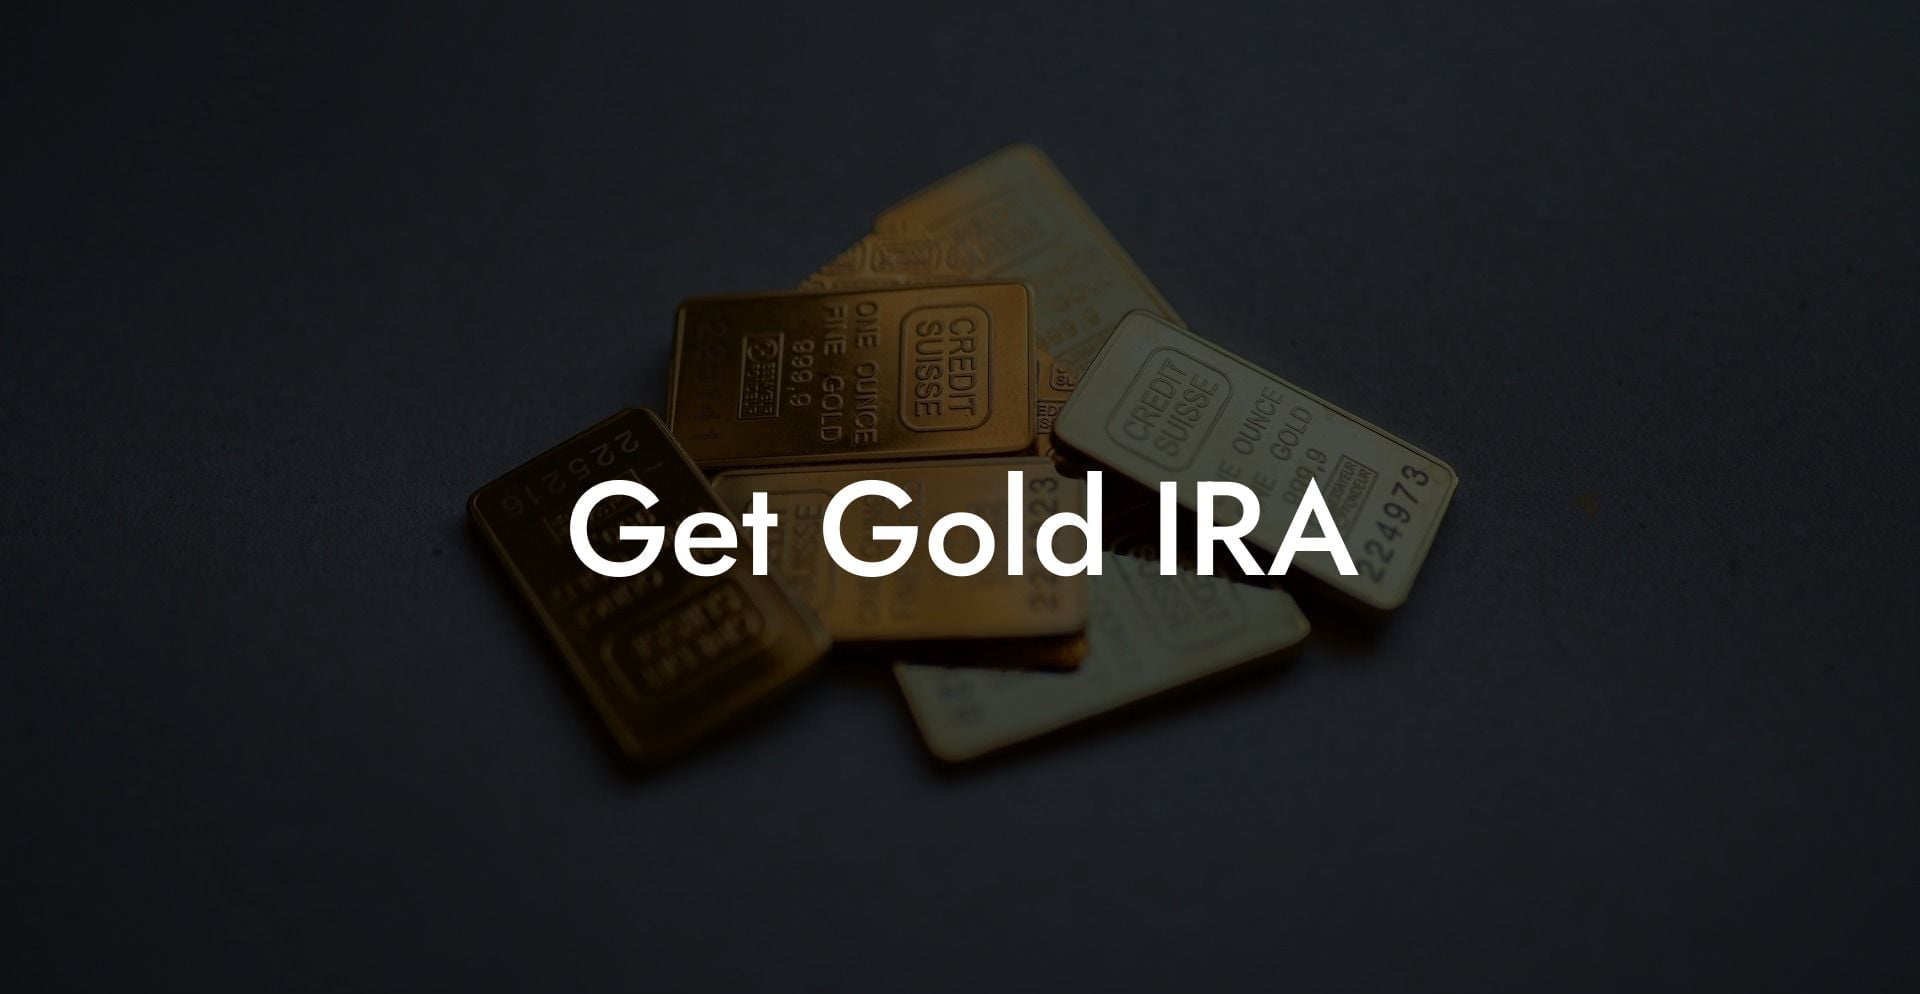 Get Gold IRA